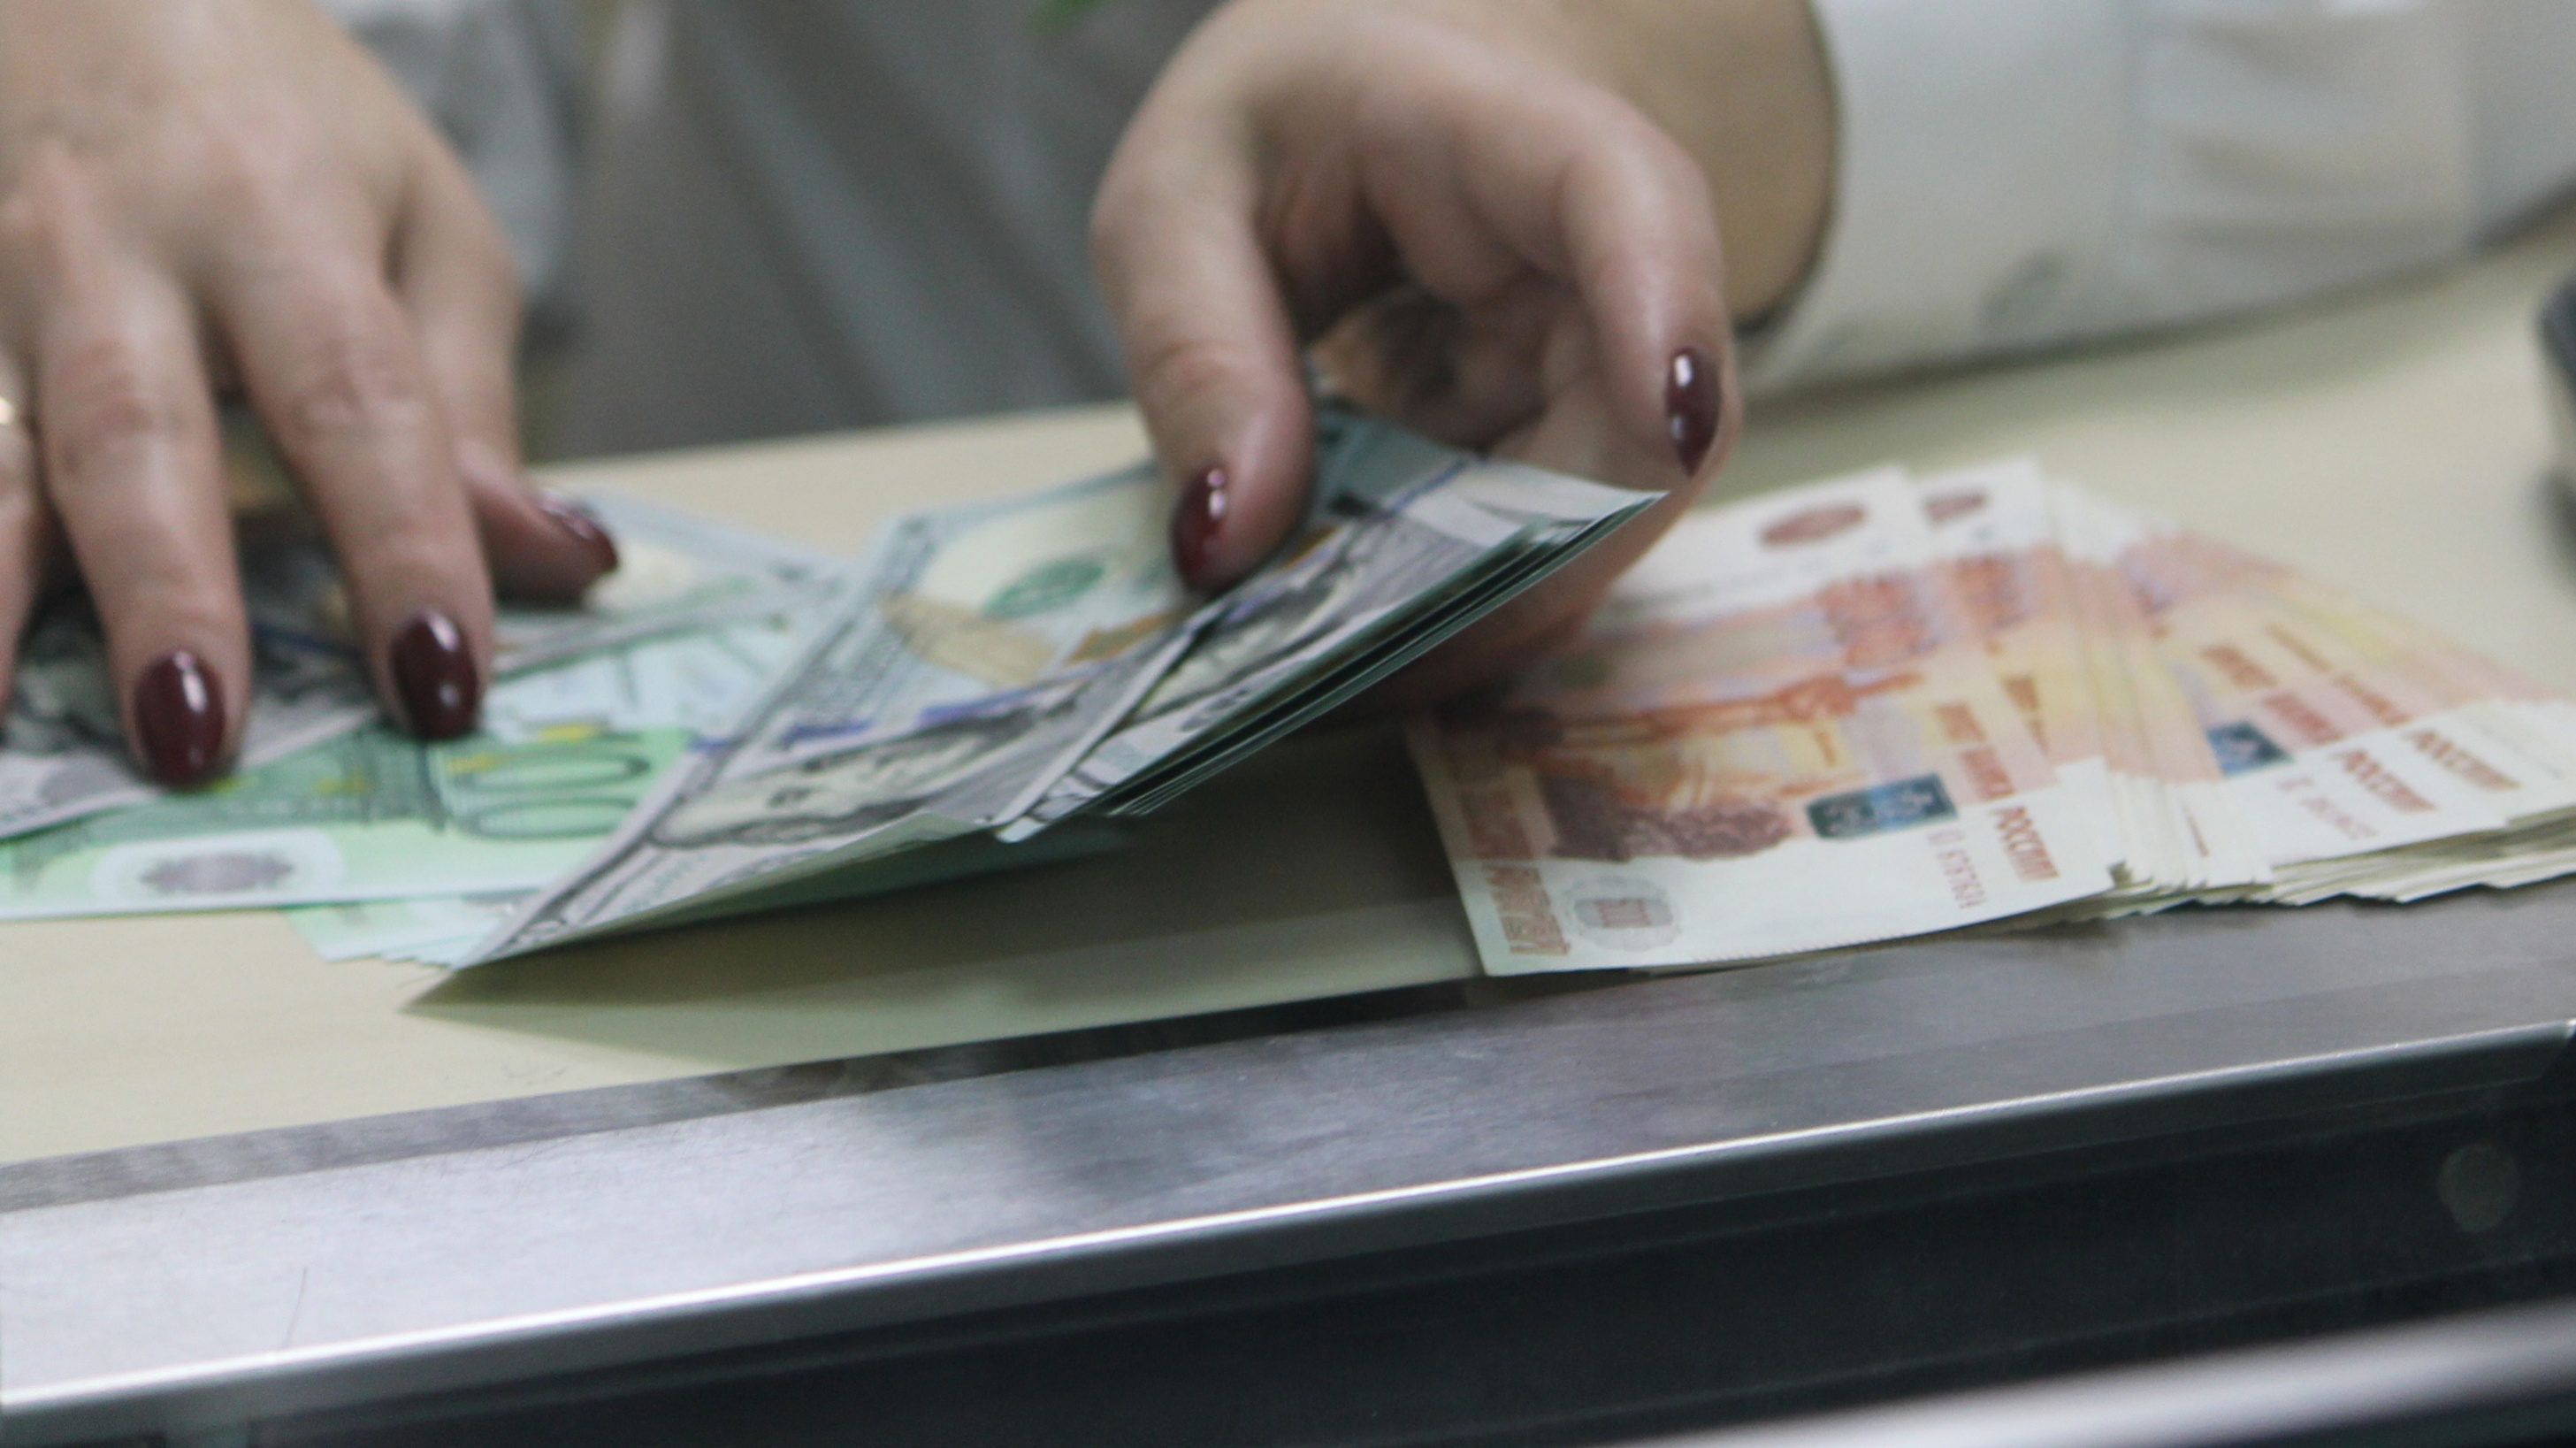 Более 12 млн рублей похитила у клиентов работница банка в Удмуртии